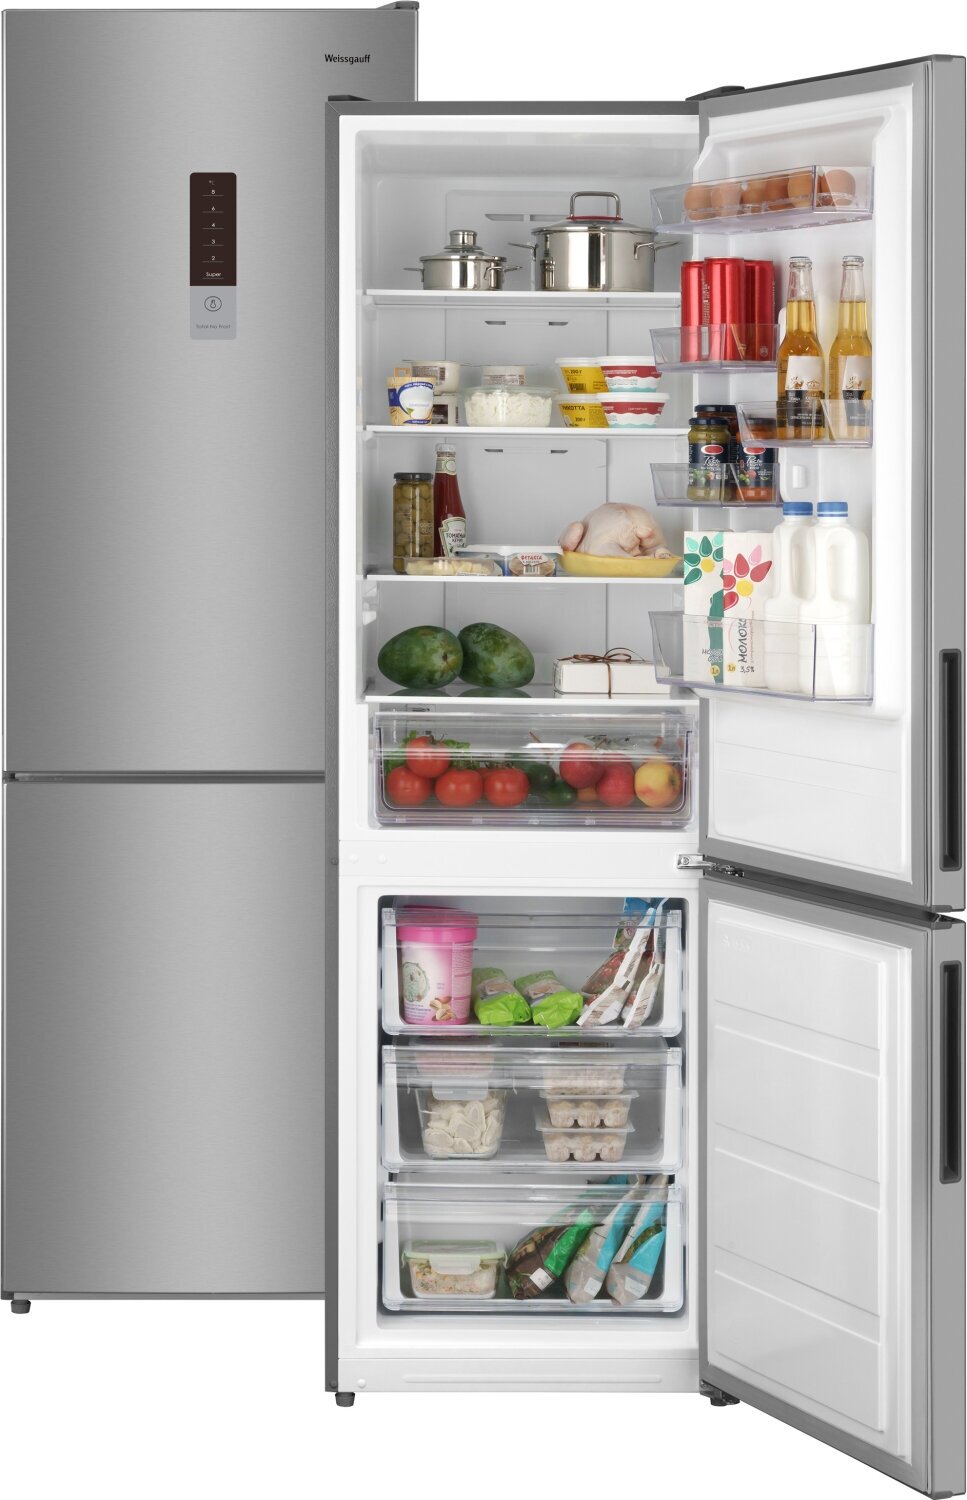 Отдельностоящий холодильник Weissgauff WRK 190 DX Total NoFrost двухкамерный, 3 года гарантии, Мощность замораживания 4 кг сутки, Сенсорное управление, Дисплей, LED освещение, Тихий режим, Перенавешиваемые двери